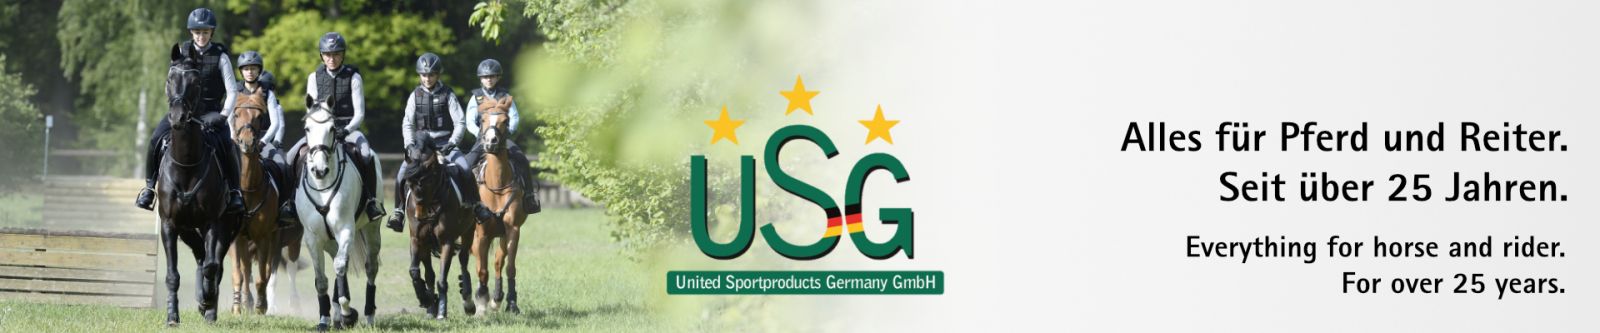 Seitenübersicht - USG - United Sportproducts Germany GmbH